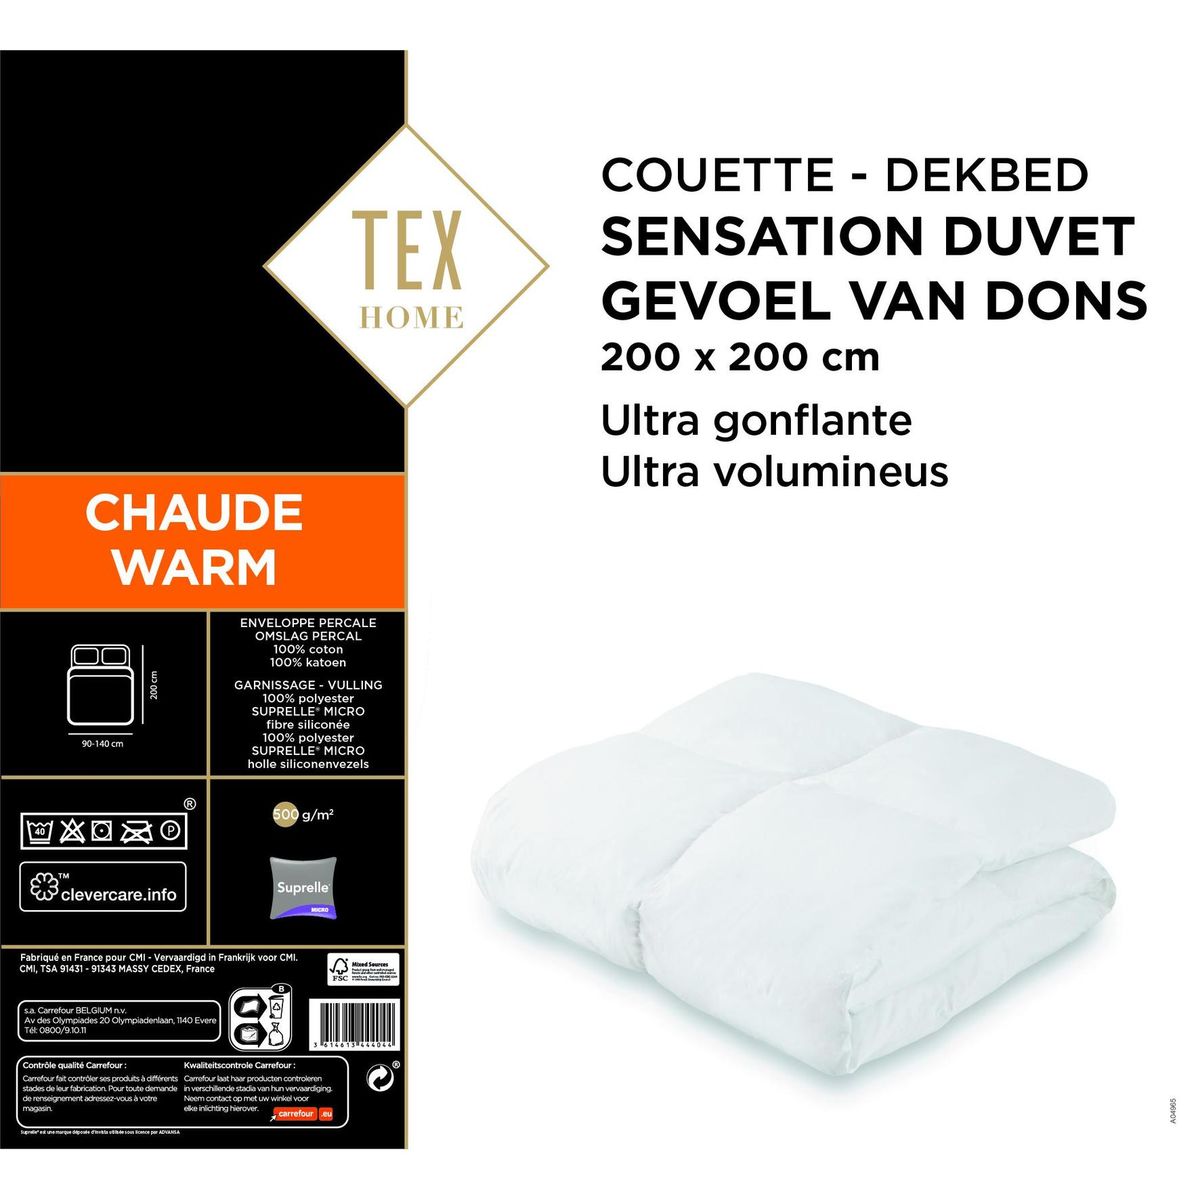 Vervullen Wiskundig constante TEX HOME Dekbed 200x200 cm Gevoel van Dons Warm | Carrefour Site